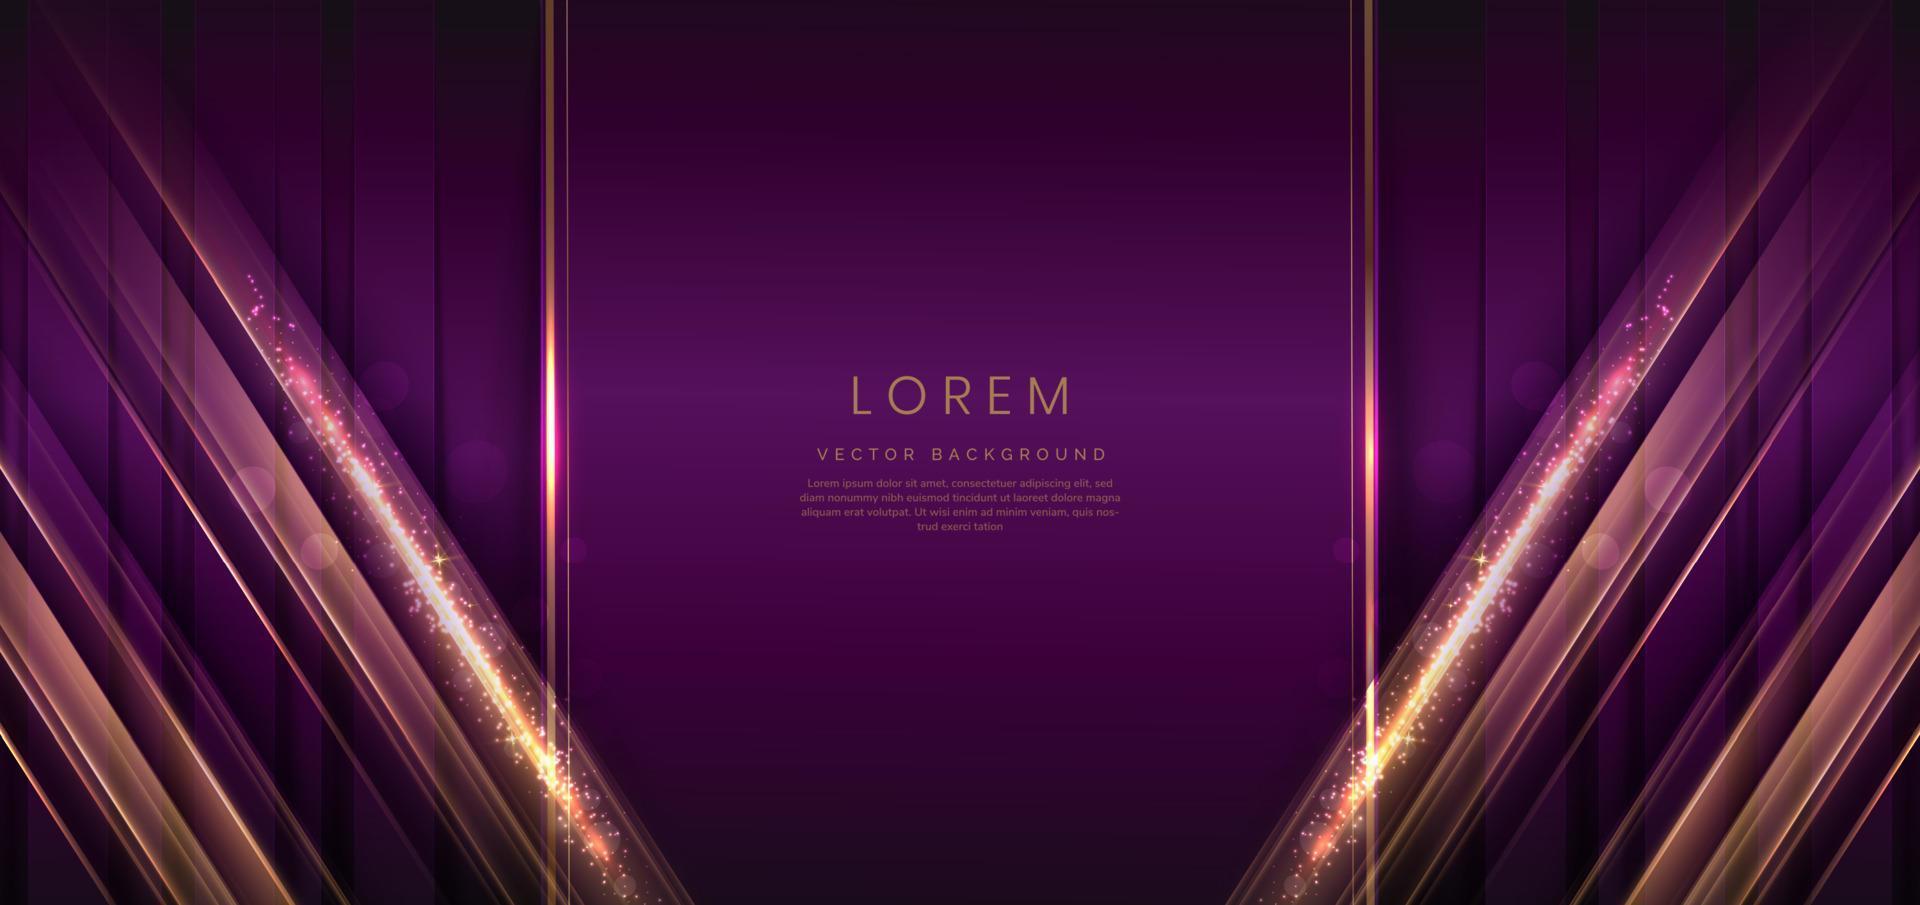 elegante fondo de lujo violeta vertical con efecto de iluminación diagonal y brillante con espacio de copia para texto. diseño de premio premium de plantilla. vector